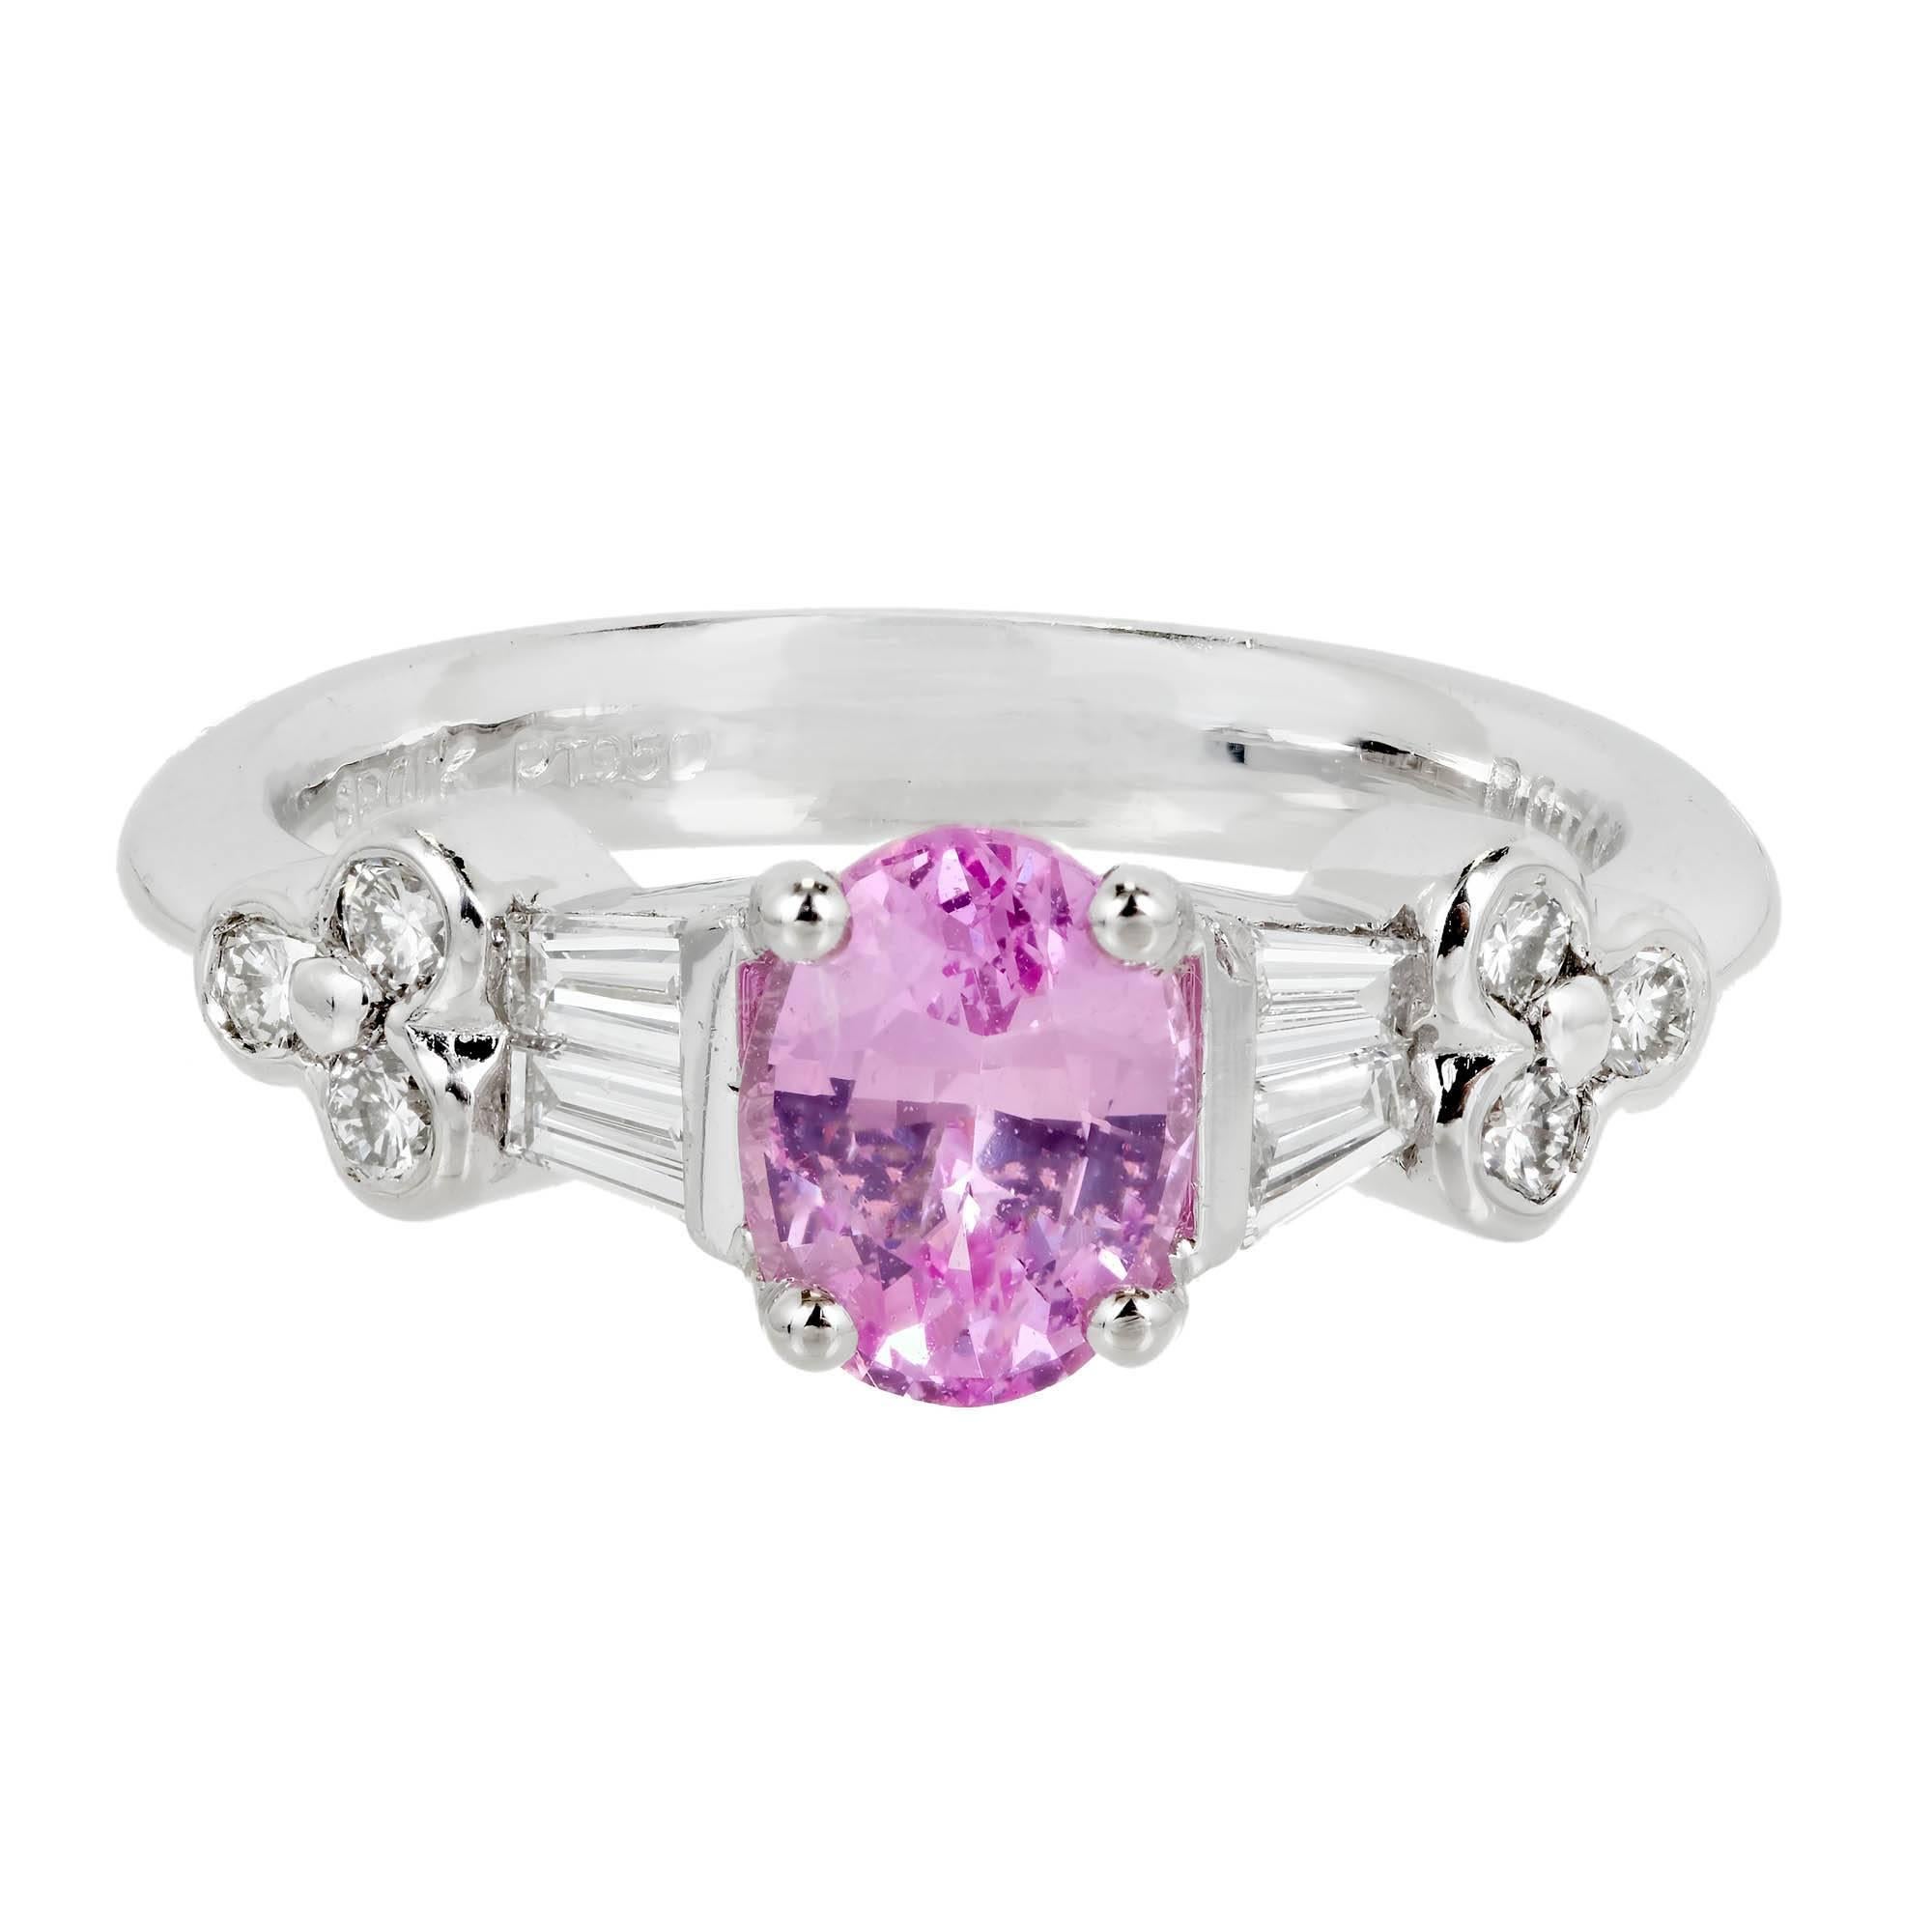 Verlobungsring mit GIA-zertifiziertem rosa ovalem Saphir und Diamant in Platin